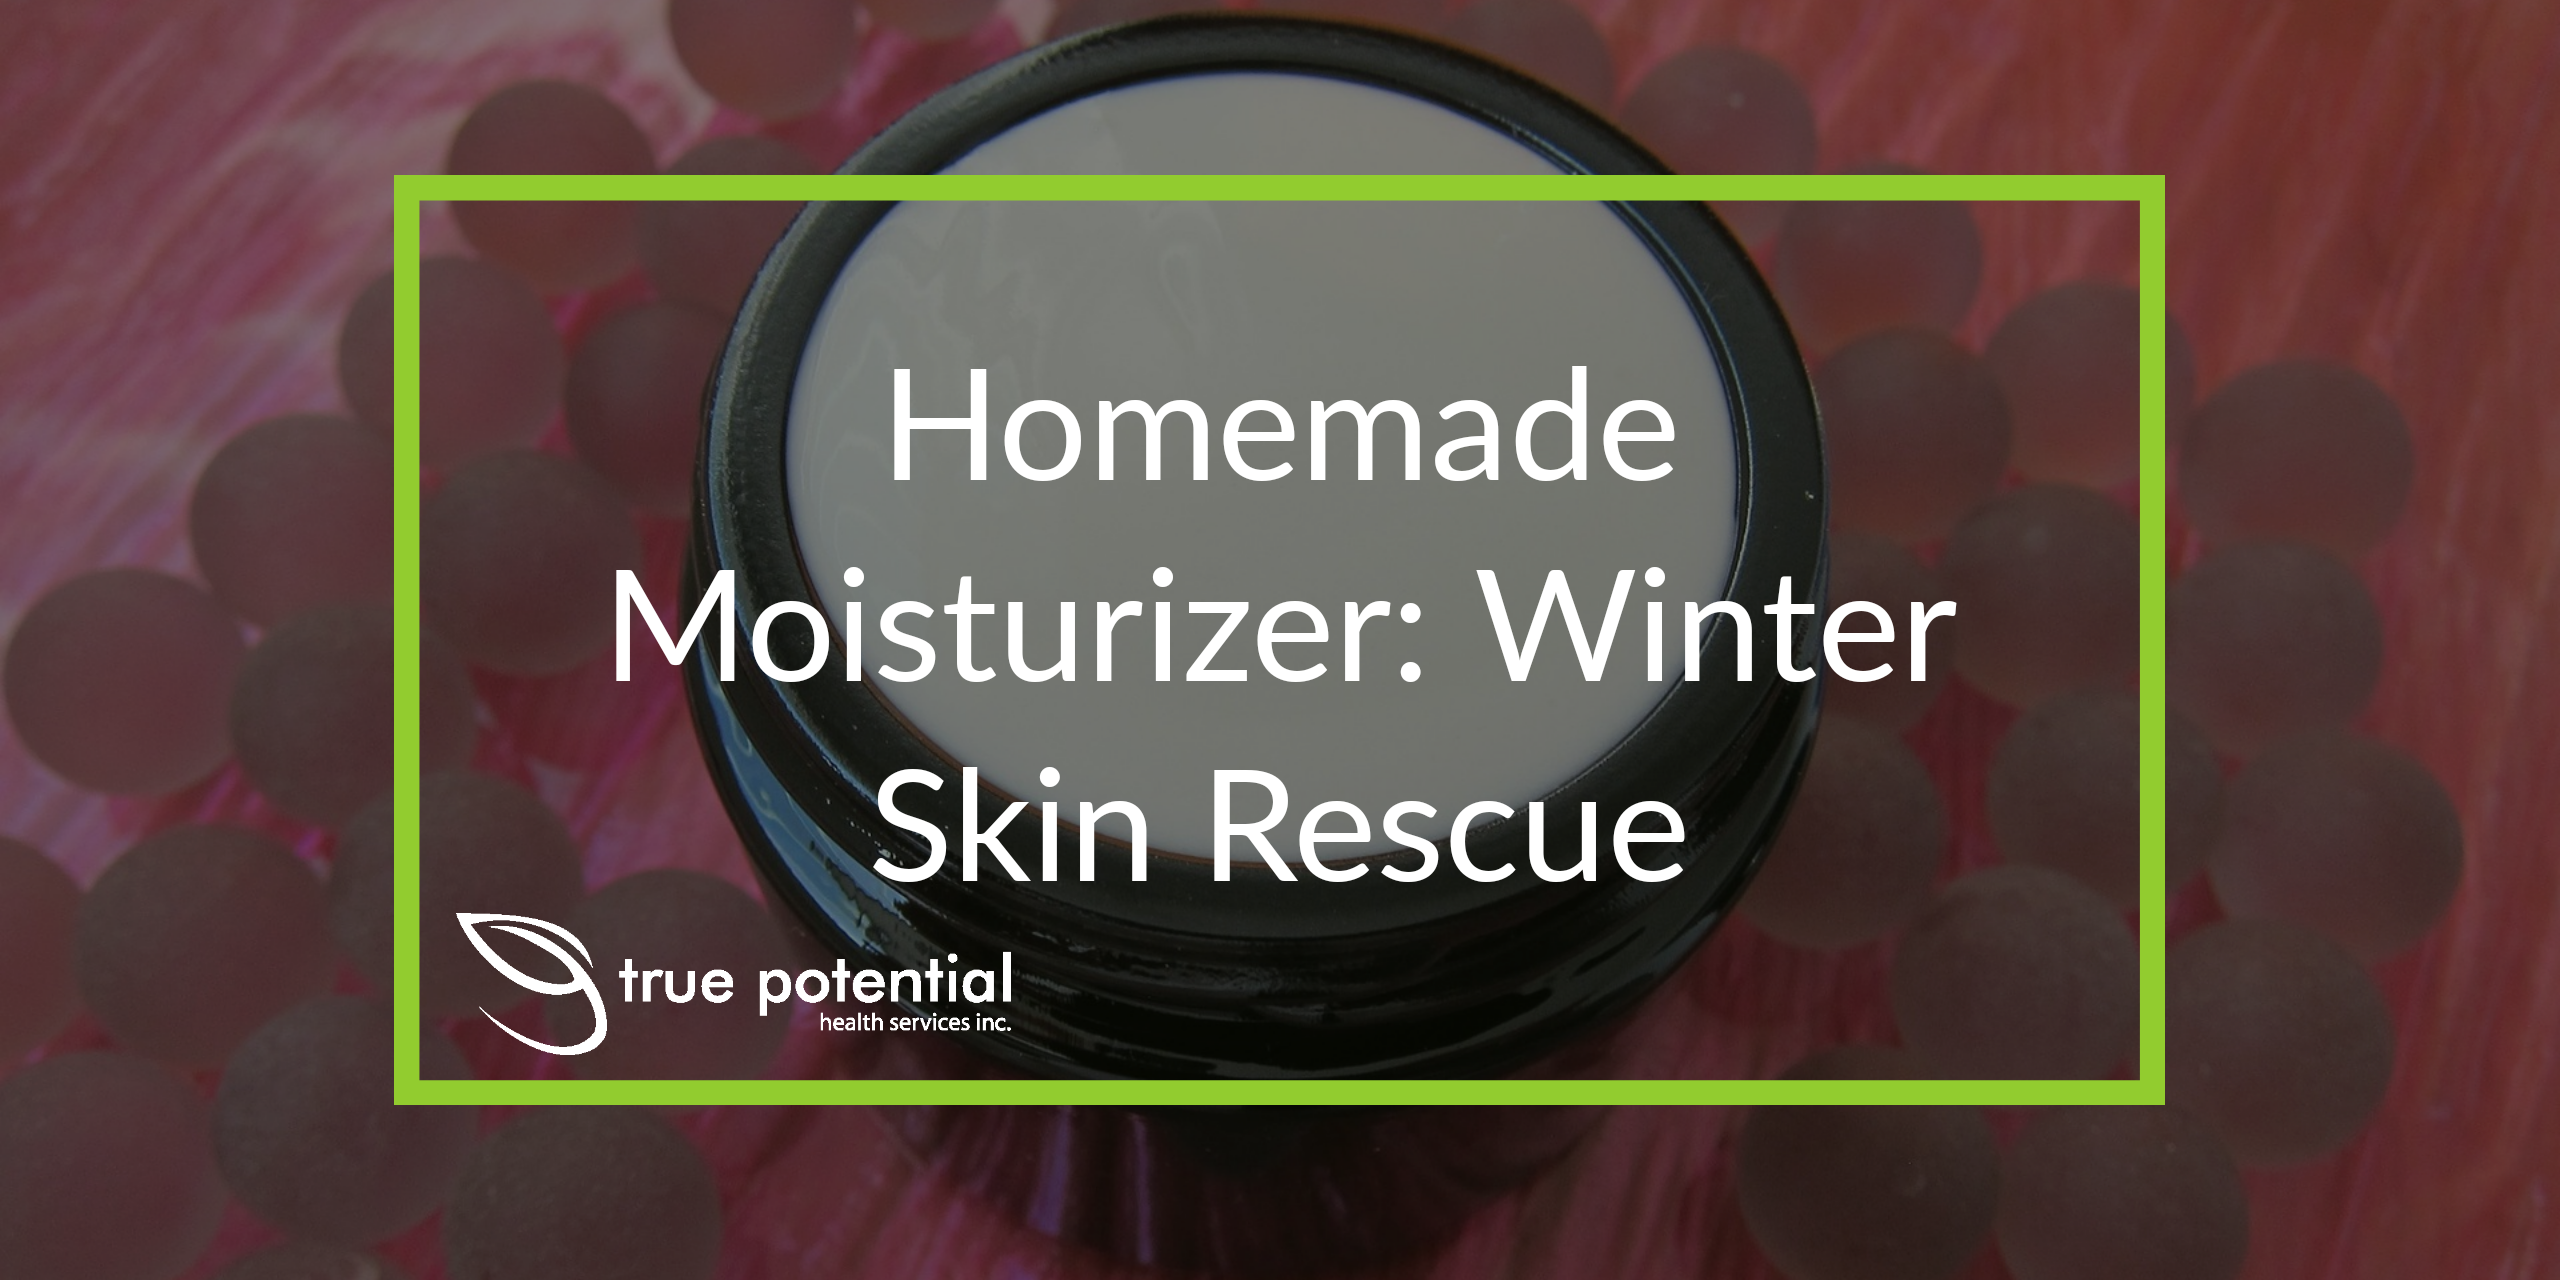 winter skin rescue moisturizer